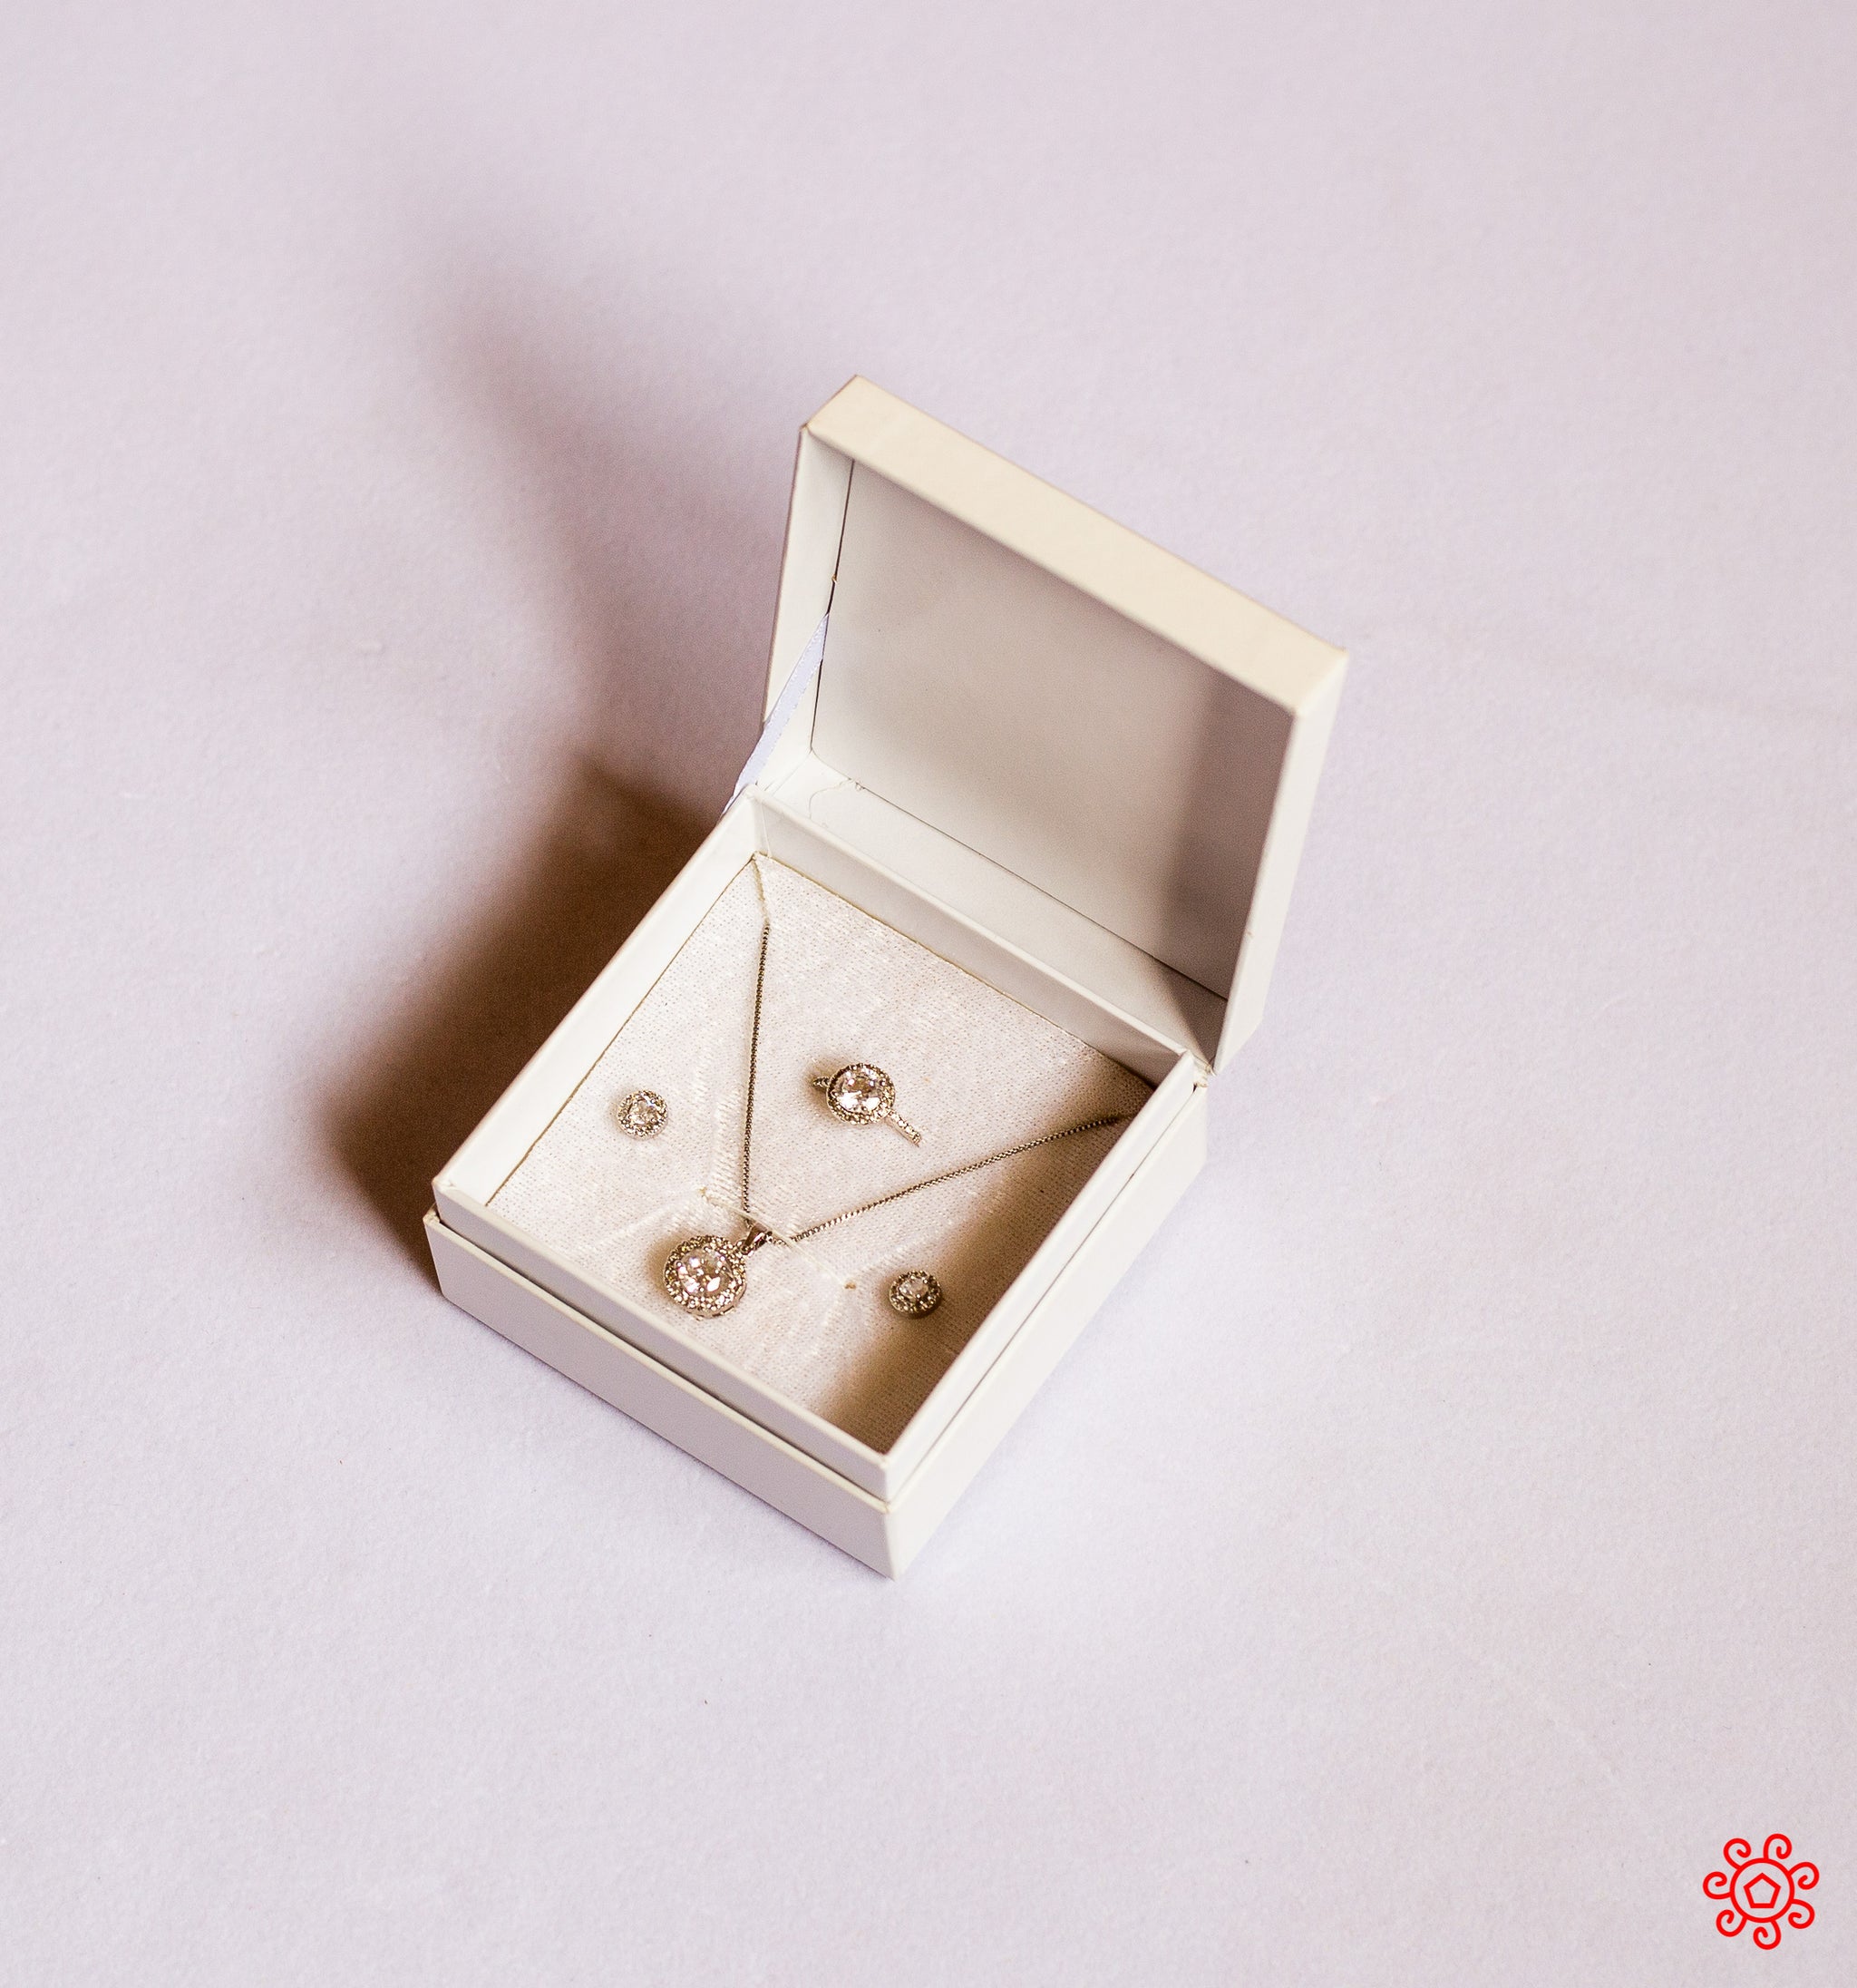 Handmade Jewelry Box - HDBX115